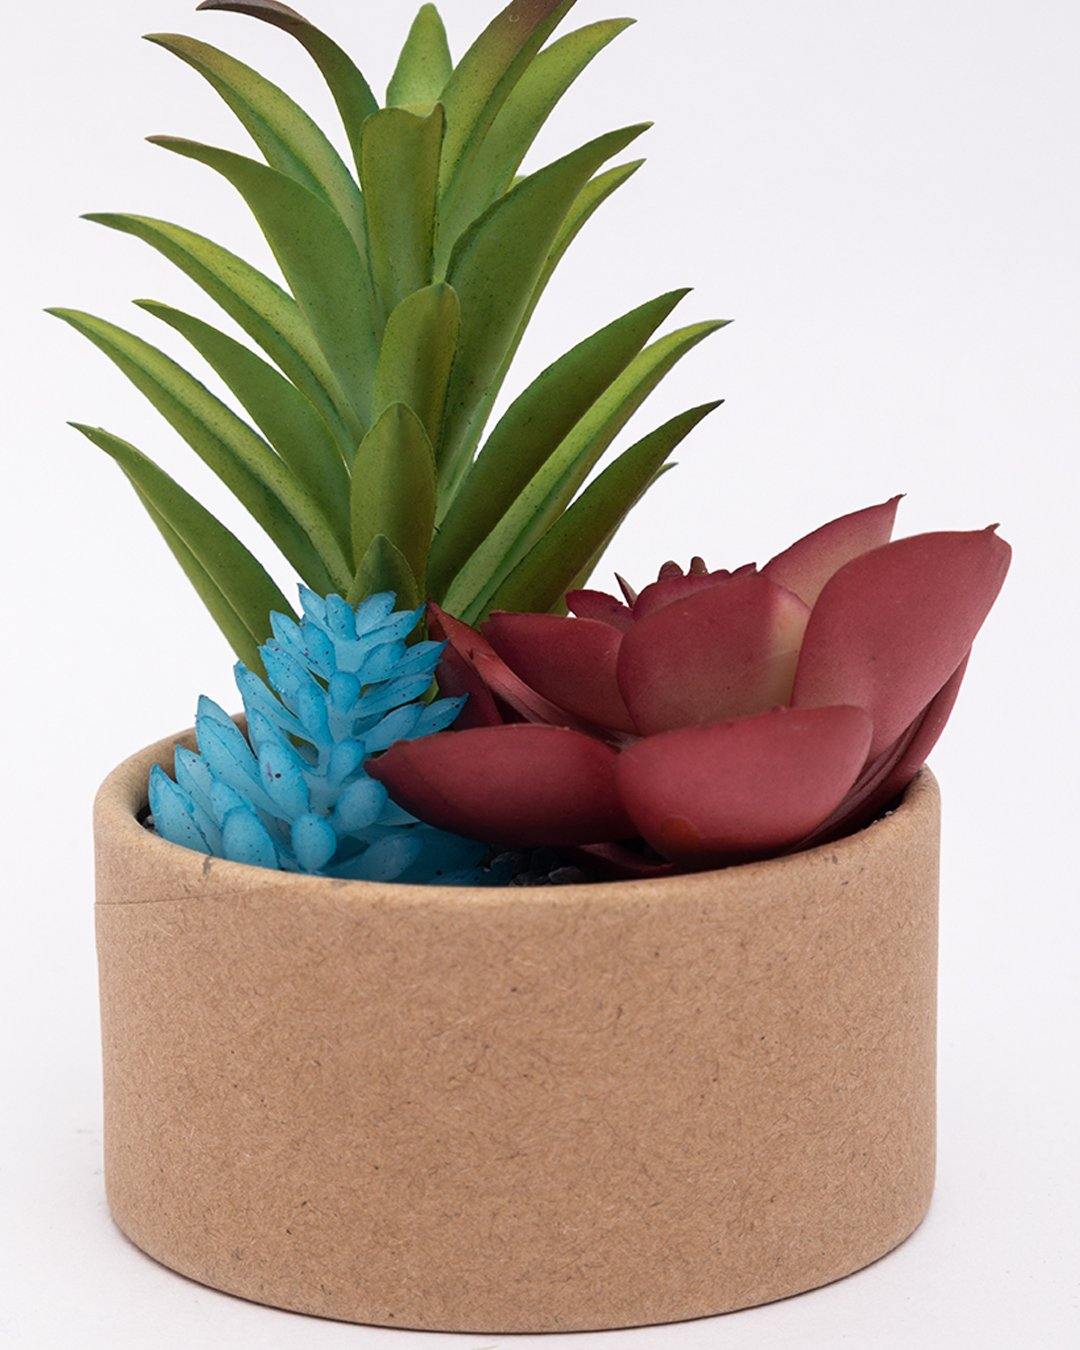 VON CASA VON CASA Artificial Flower with Pot, Multicolour, Plastic & Paper - Von Casa